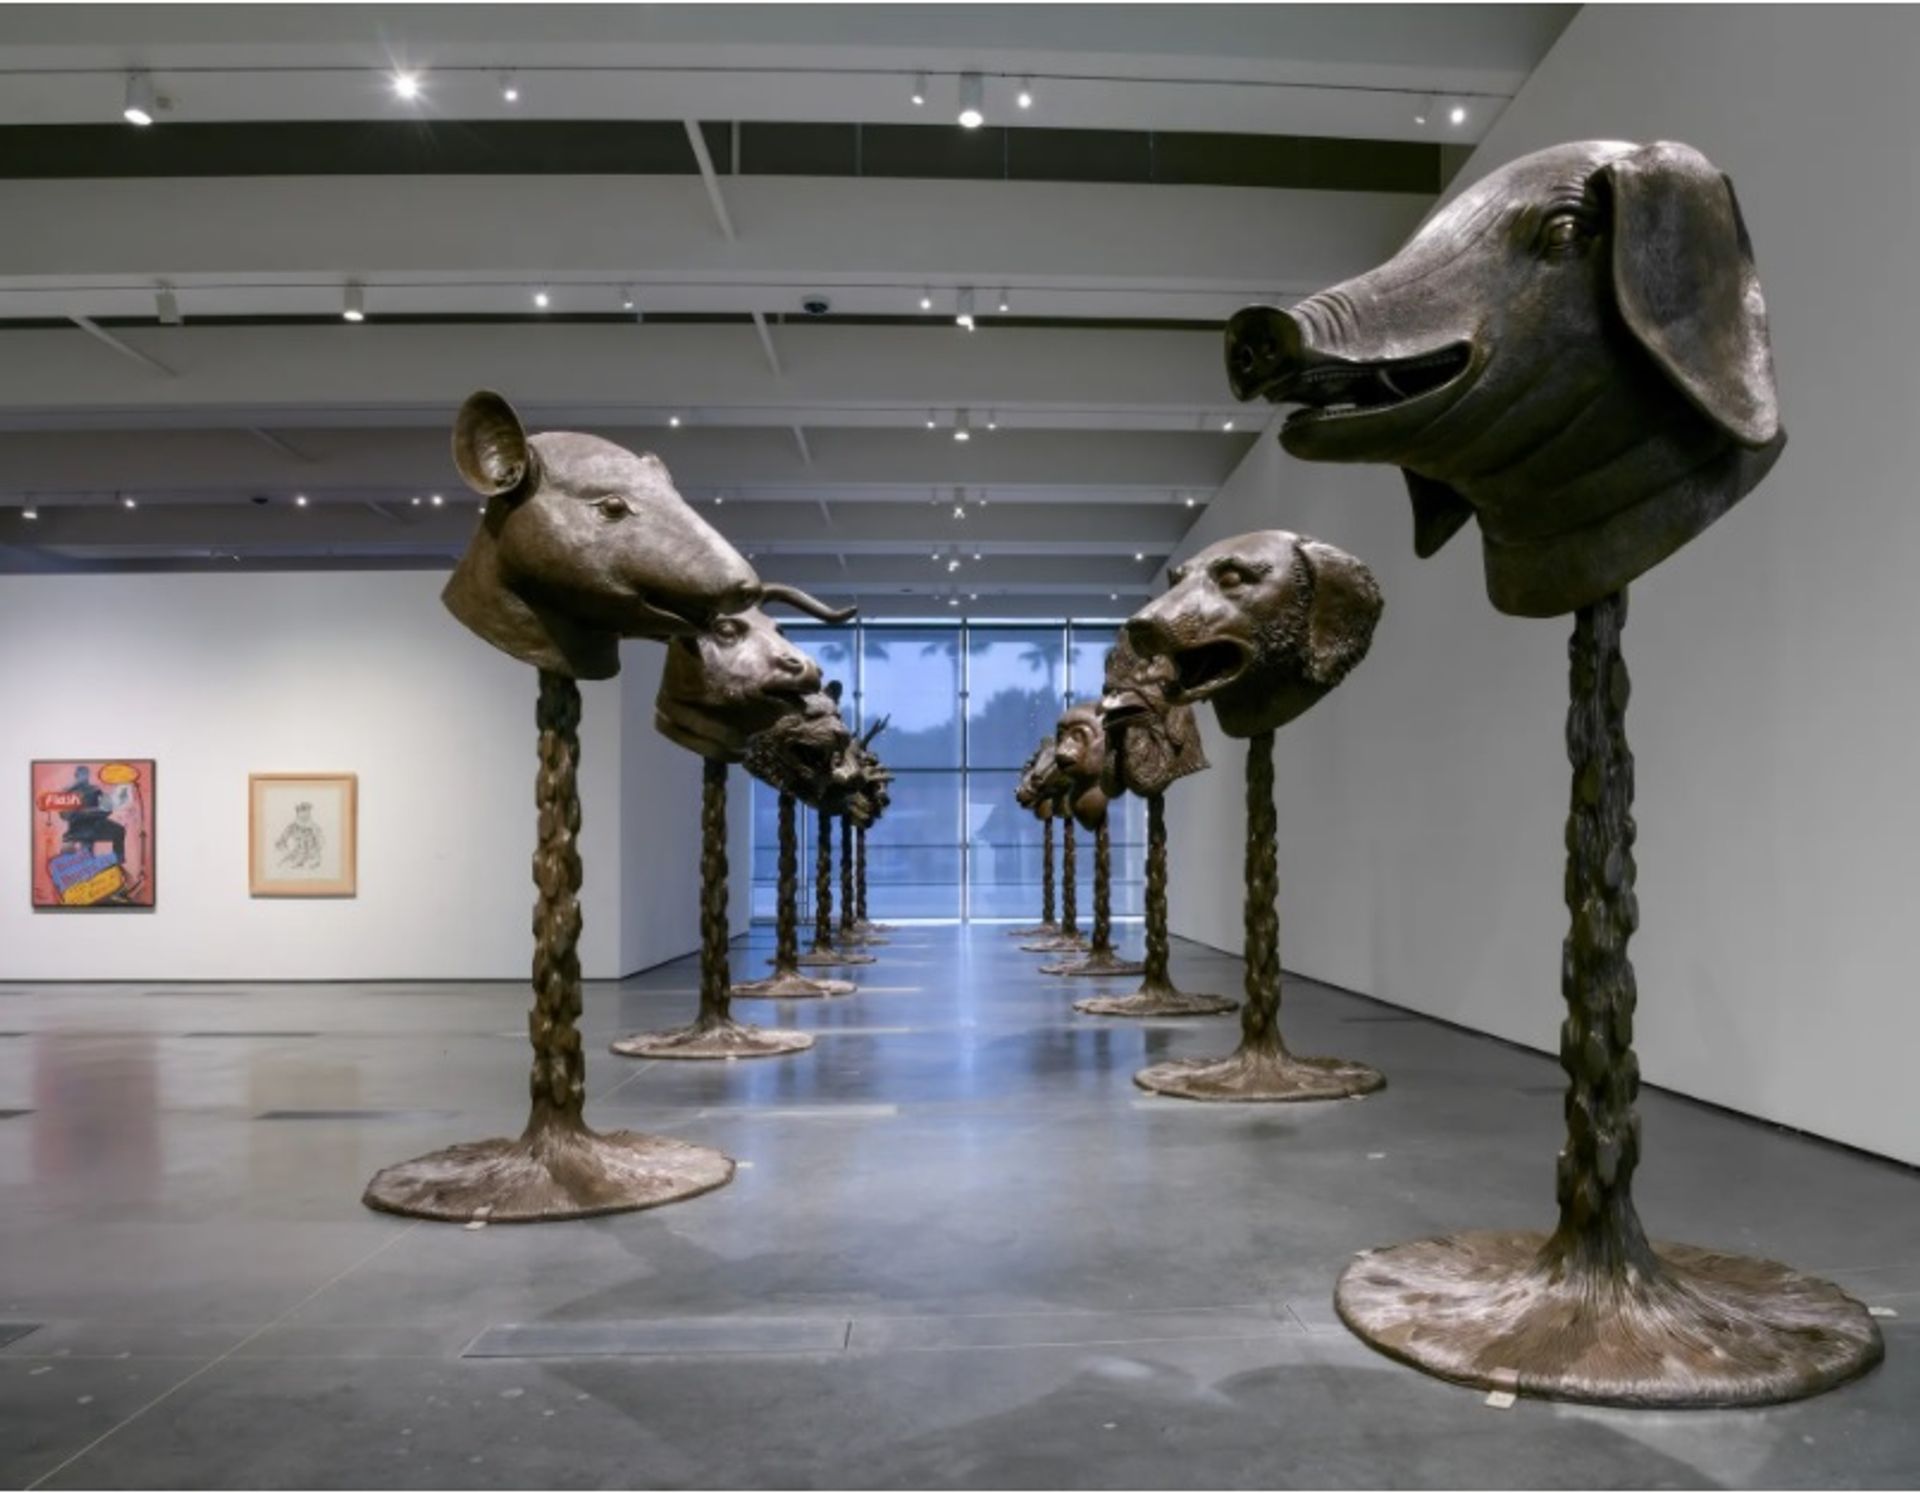 תצוגה מתוך Legacies of Exchange: Chinese Contemporary Art from the Yuz Foundation במוזיאון לאמנות של לוס אנג'לס, שמציג את Circle of Animals/Zodiac Heads (2011) מאת איי וויוויי

תמונה © Museum Associates/LACMA